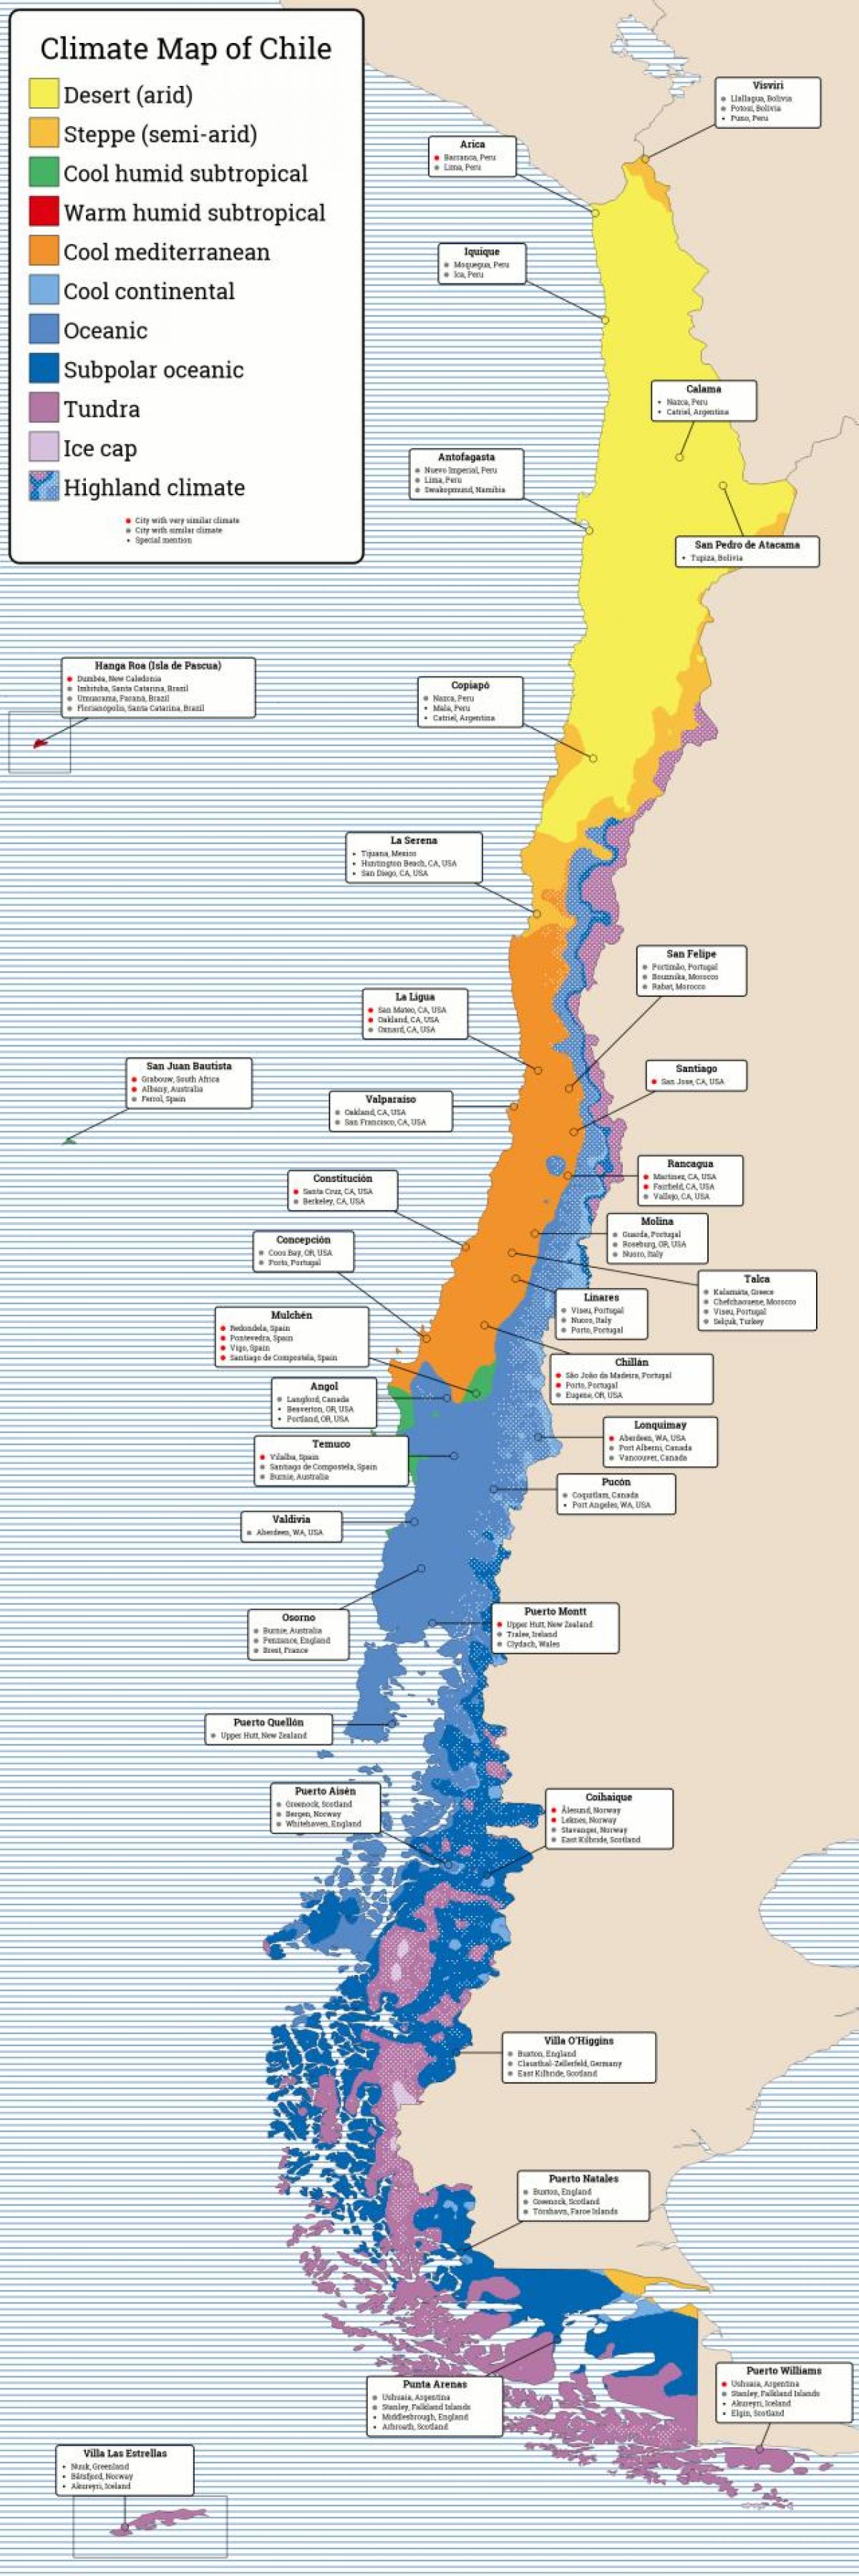 Χάρτης της Χιλής για το κλίμα